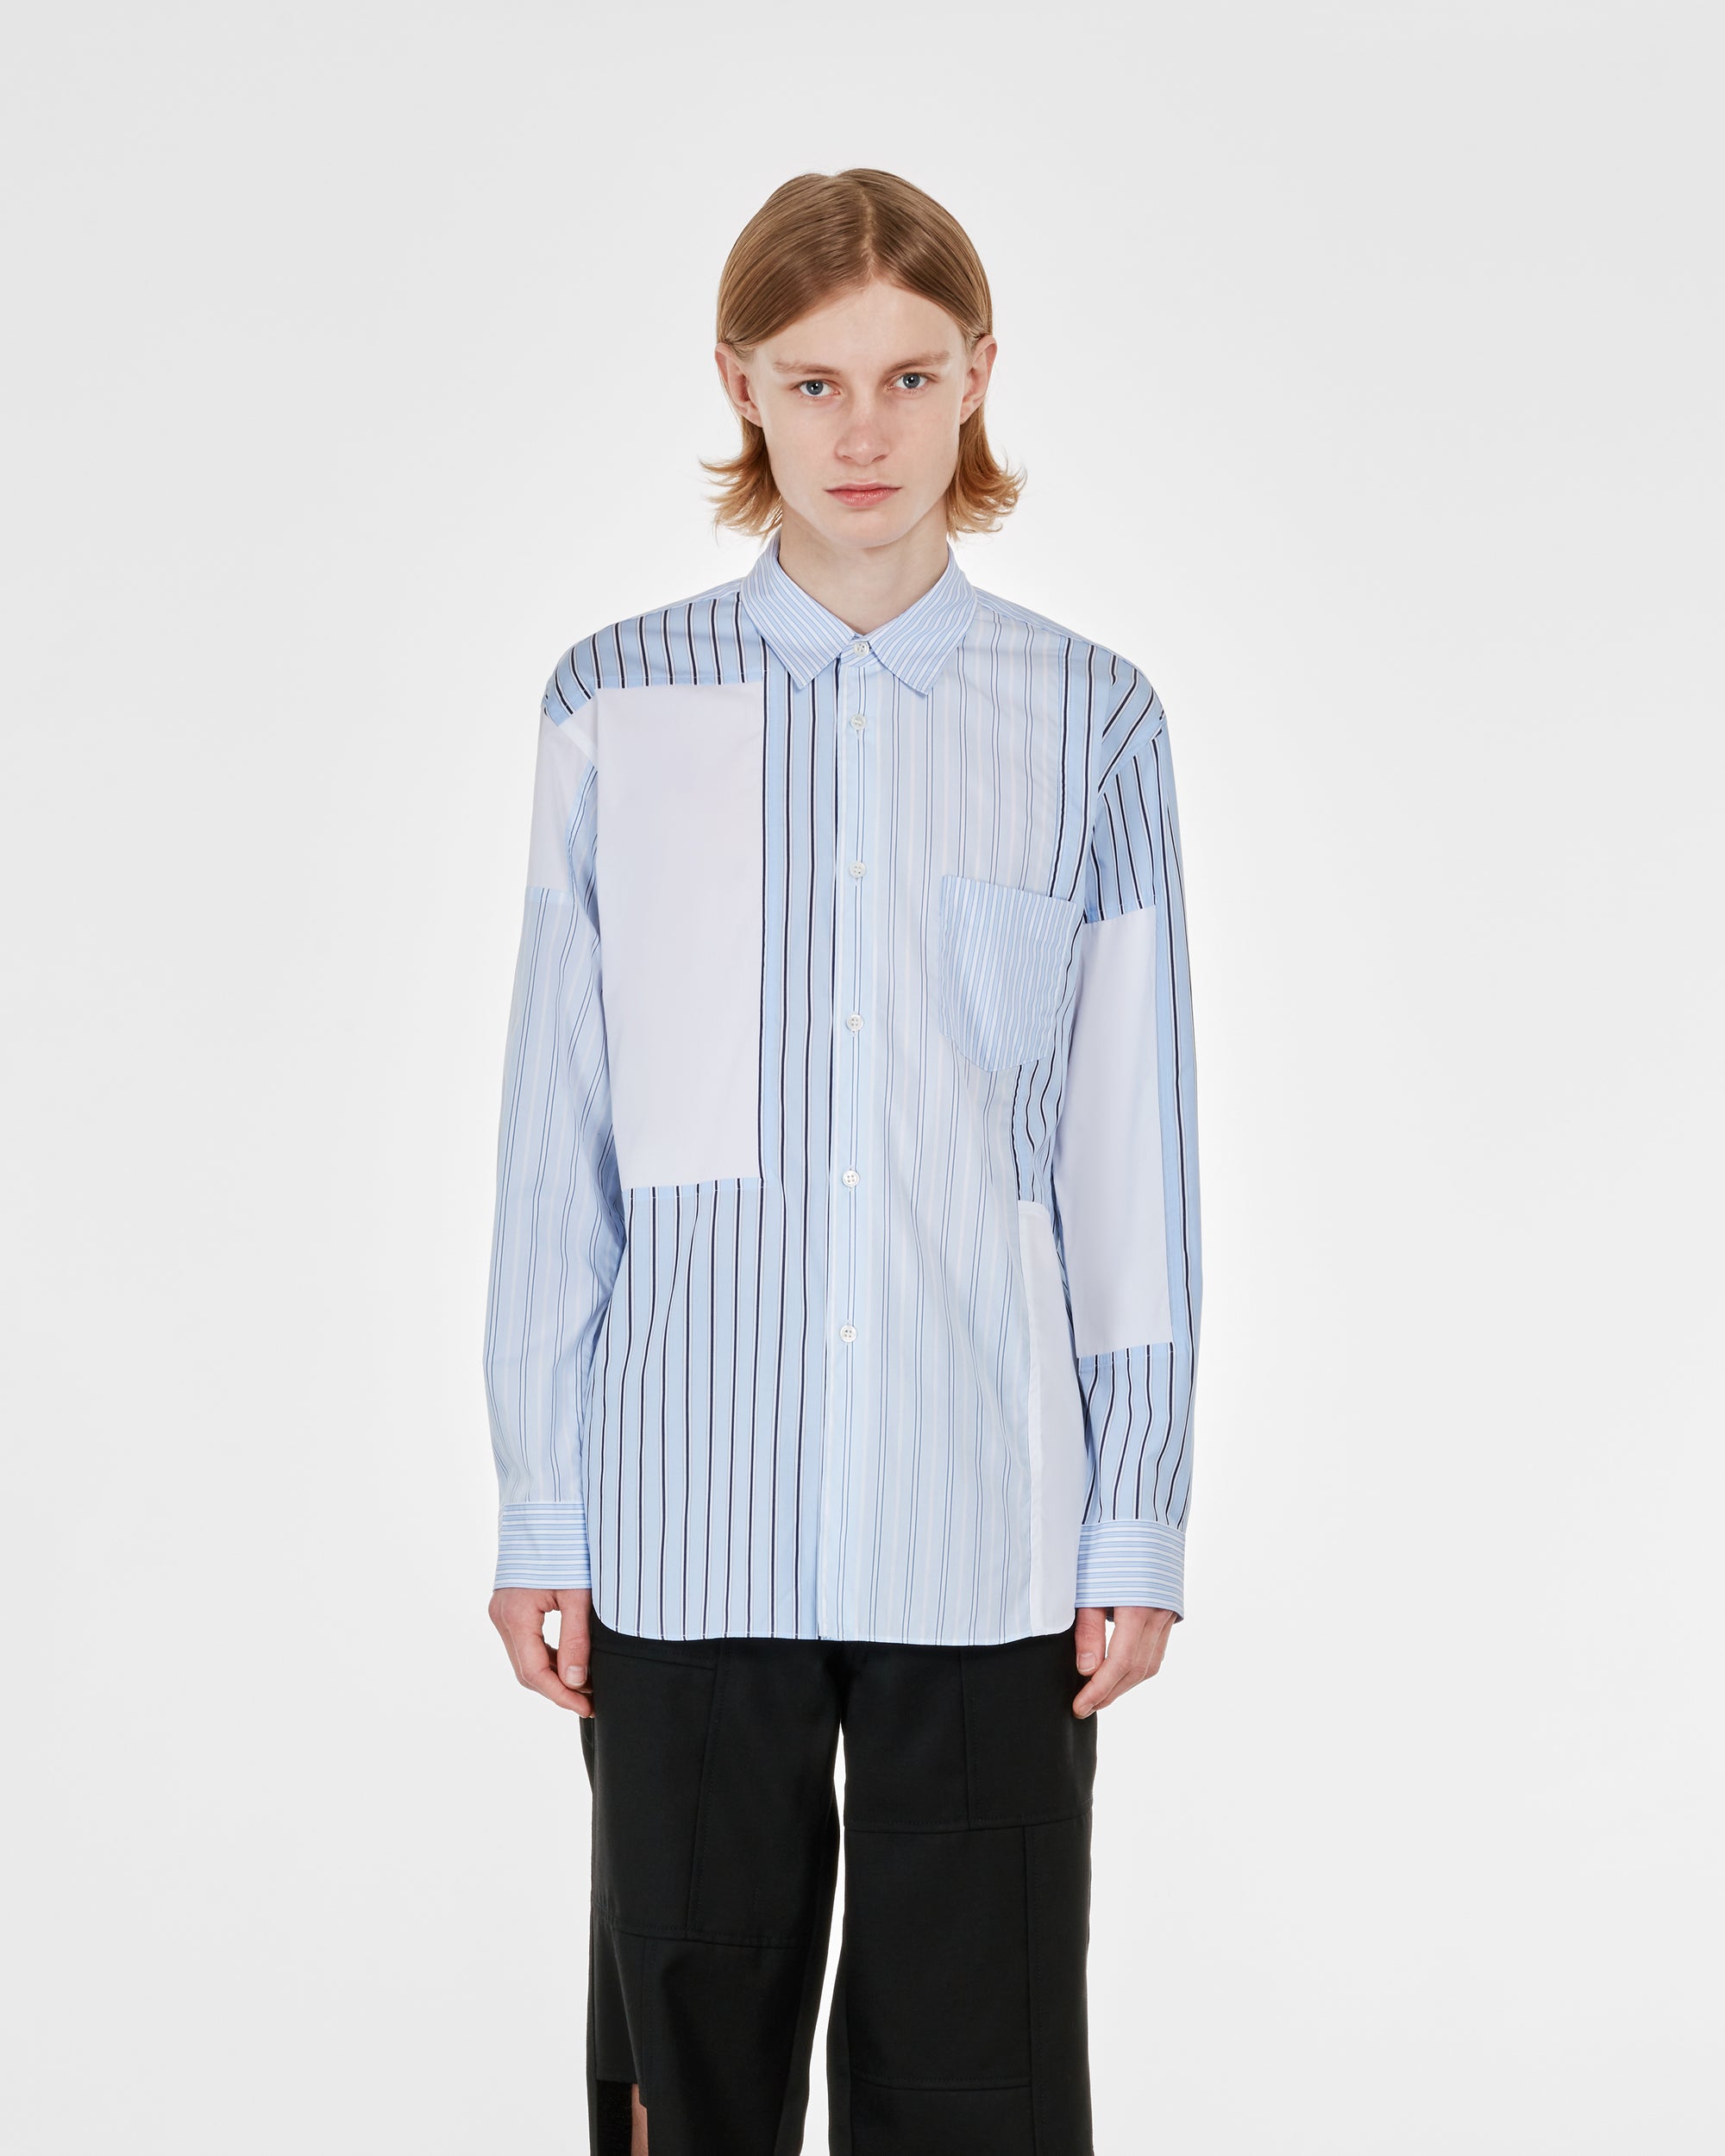 CDG Shirt - Men's Cotton Stripe Poplin Shirt - (White) view 2